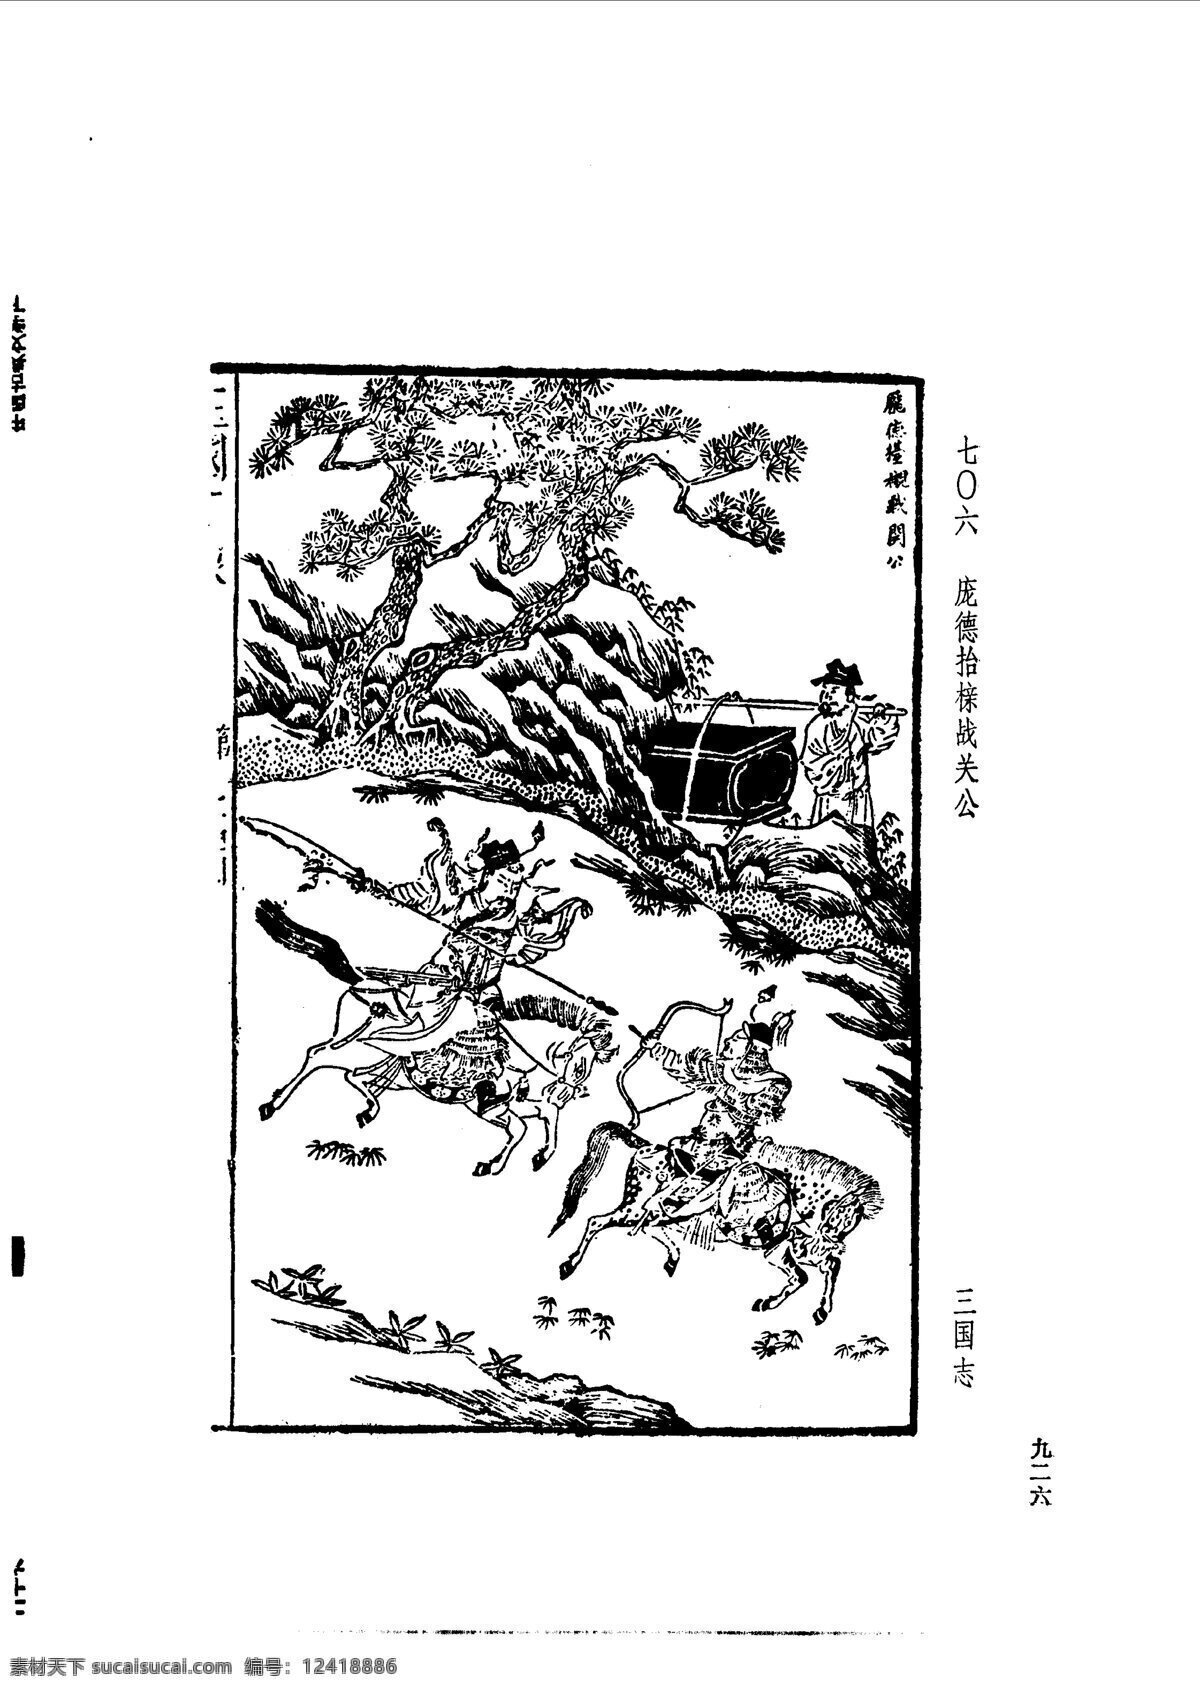 中国 古典文学 版画 选集 上 下册0954 设计素材 版画世界 书画美术 白色